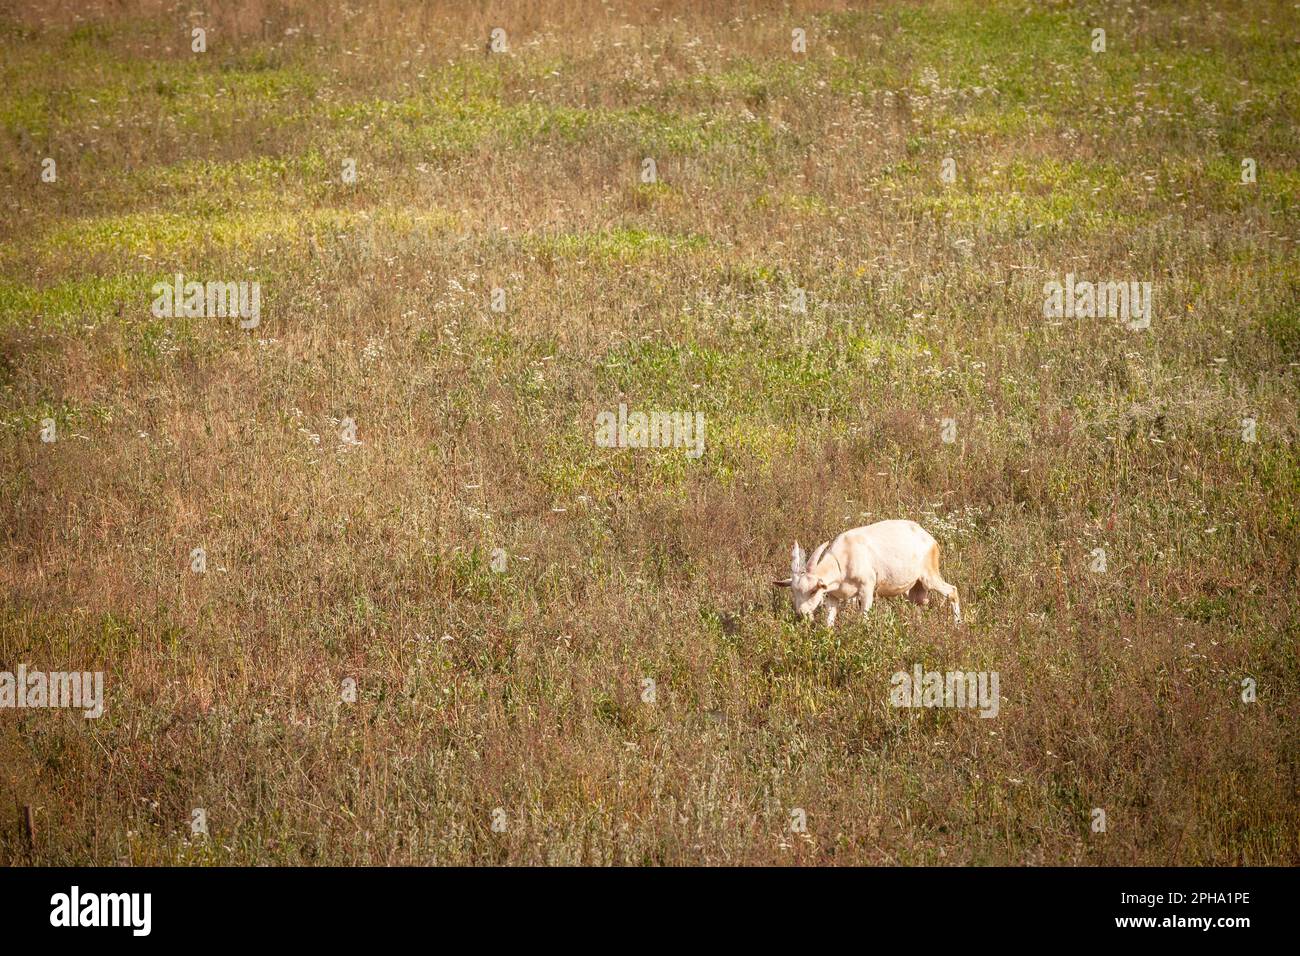 Bild einer jungen Ziege, einer weißen Ziege aus Vieh, das Gras auf einem landwirtschaftlichen Feld frisst. Stockfoto